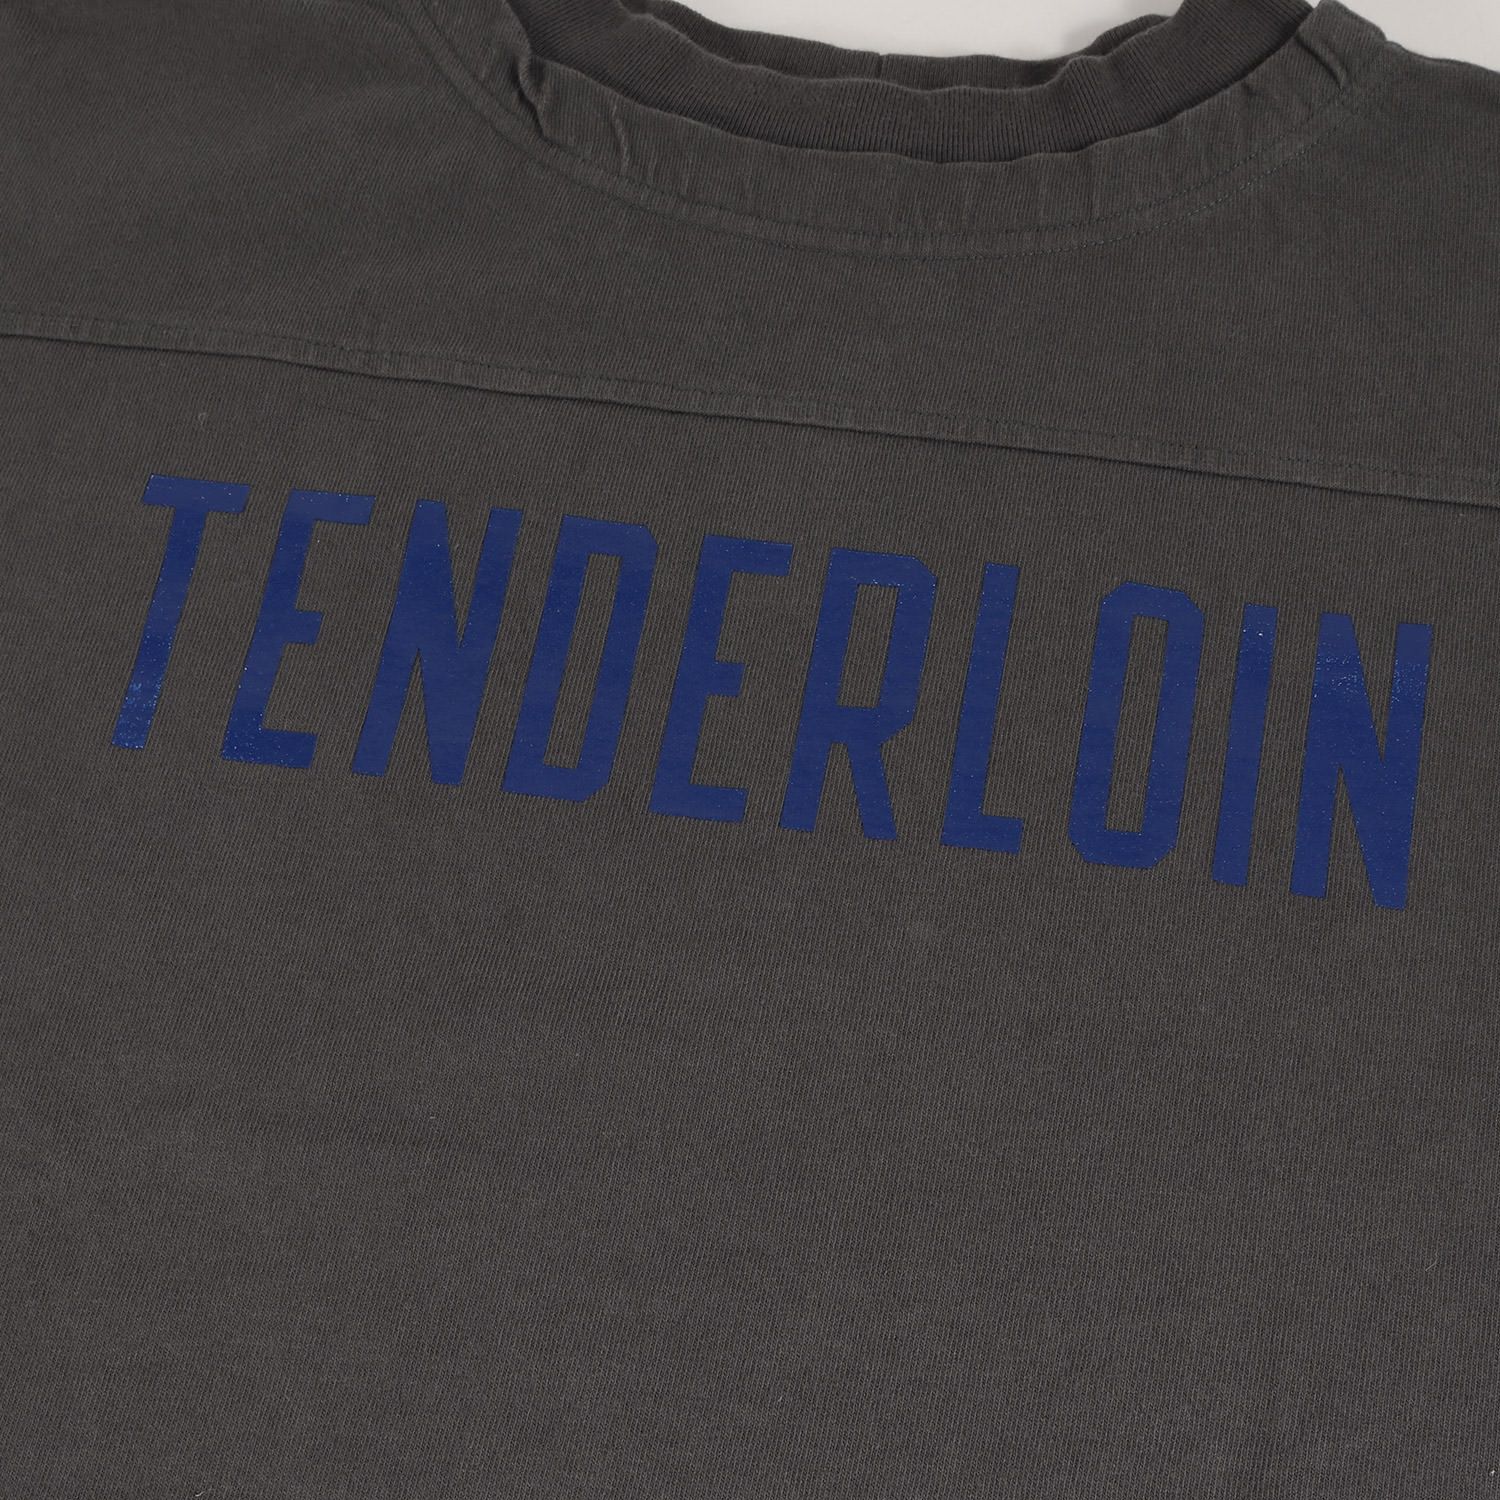 TENDERLOIN テンダーロイン Tシャツ サイズ:L 20AW ブランドロゴ 7分袖 フットボール Tシャツ FOOTBALL SHT  チャコール トップス カットソー 長袖 ブランド